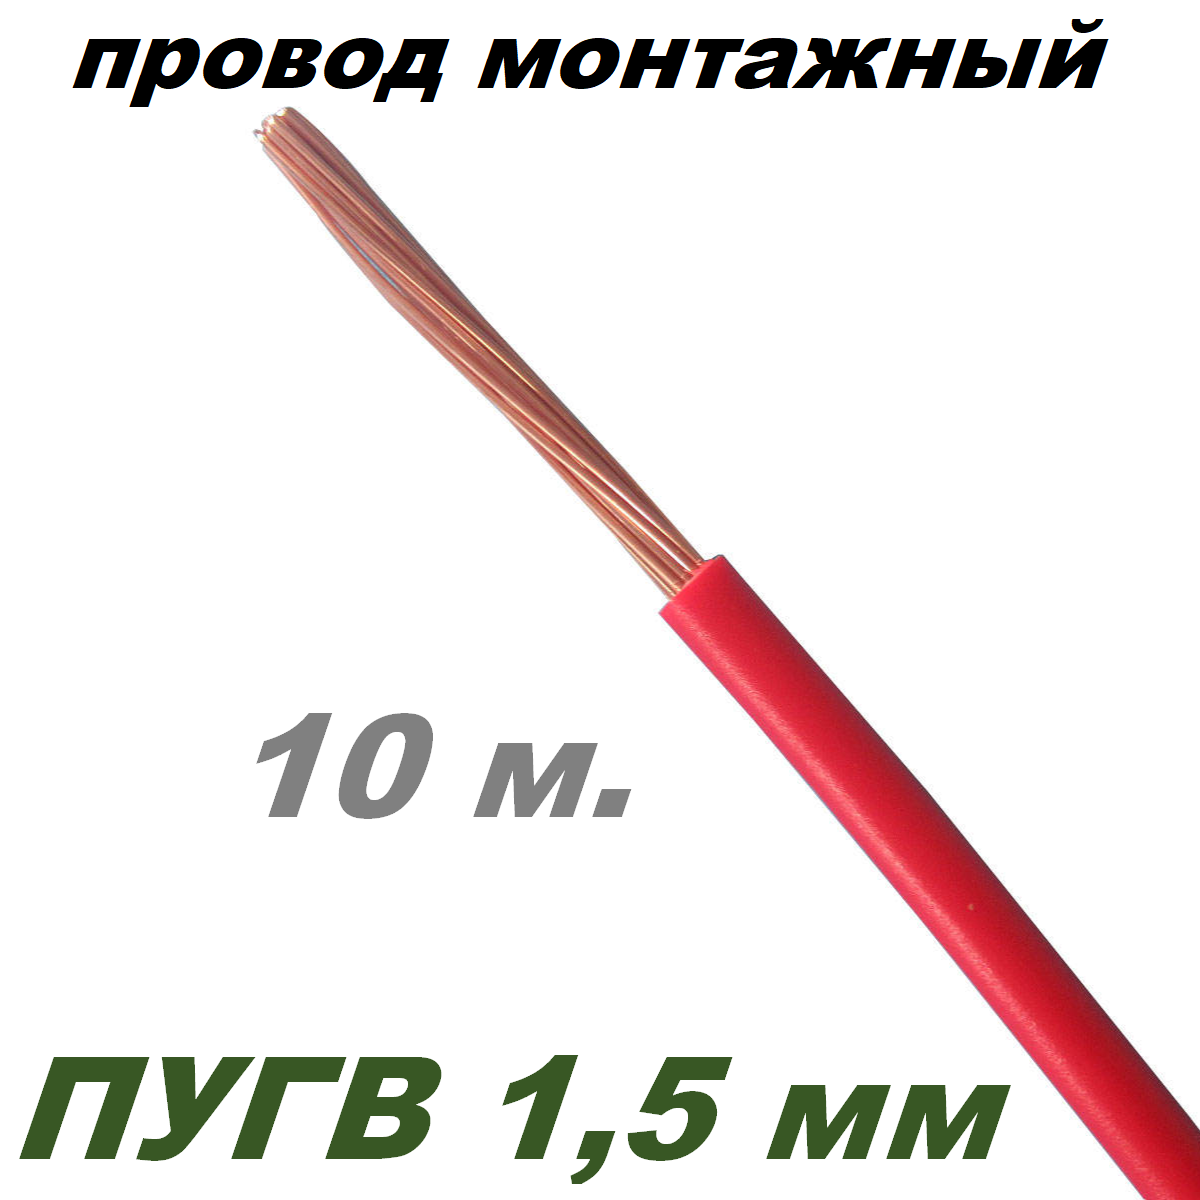 Провод ПуГВ 1,5 мм красный, 10 м.